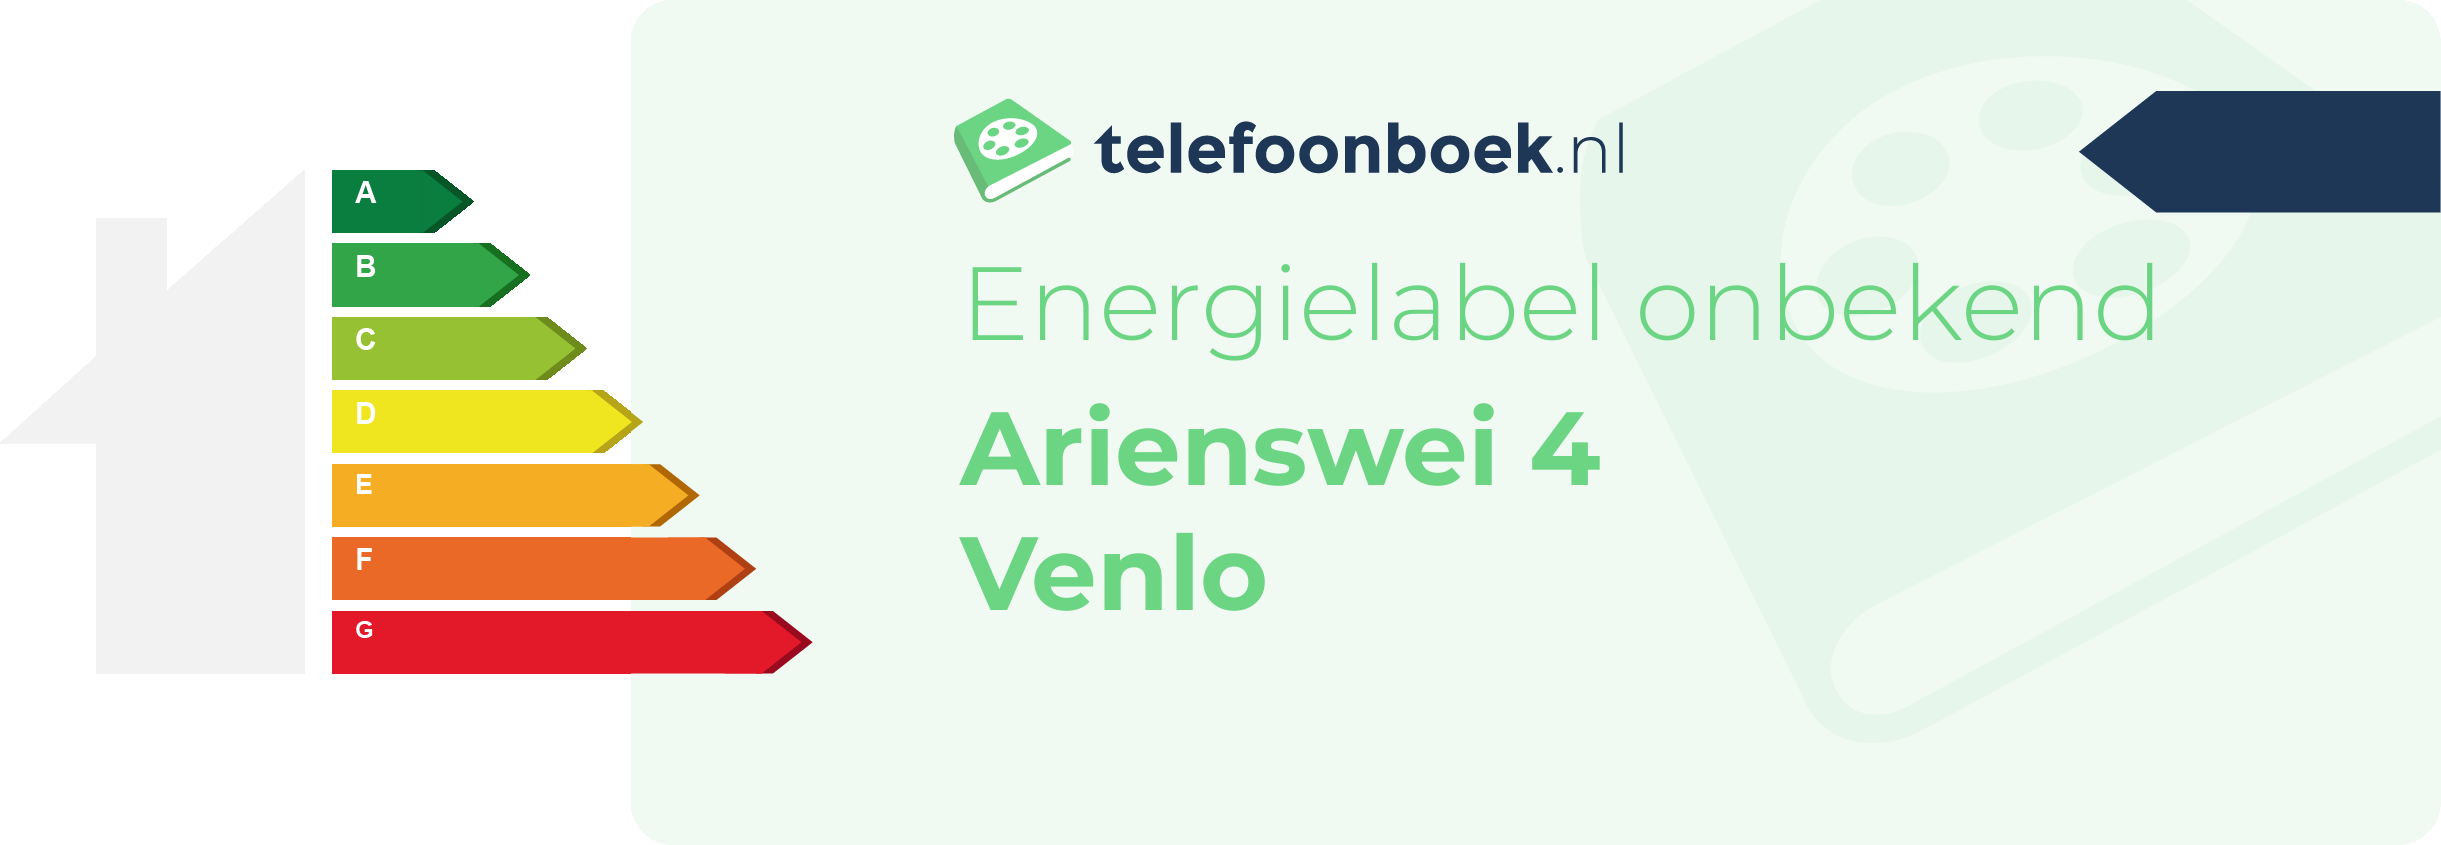 Energielabel Arienswei 4 Venlo